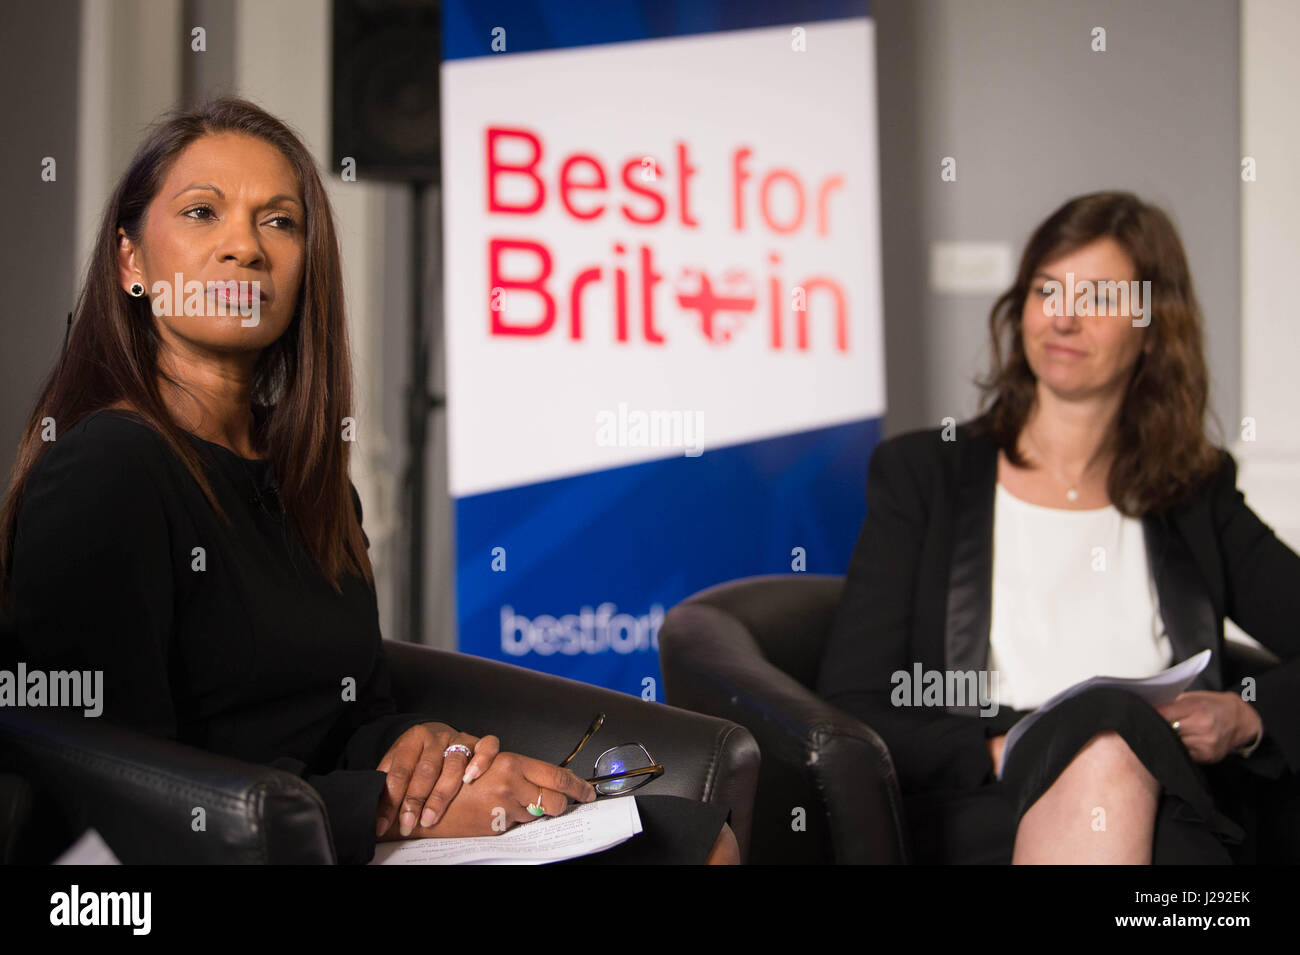 Gina Miller (sinistra) e Eloise Todd al lancio dei migliori per la Gran Bretagna campagna che mira a convincere la gente a votare tatticamente nell'elezione generale, presso l'Institute of Contemporary Arts di Londra centrale. Foto Stock